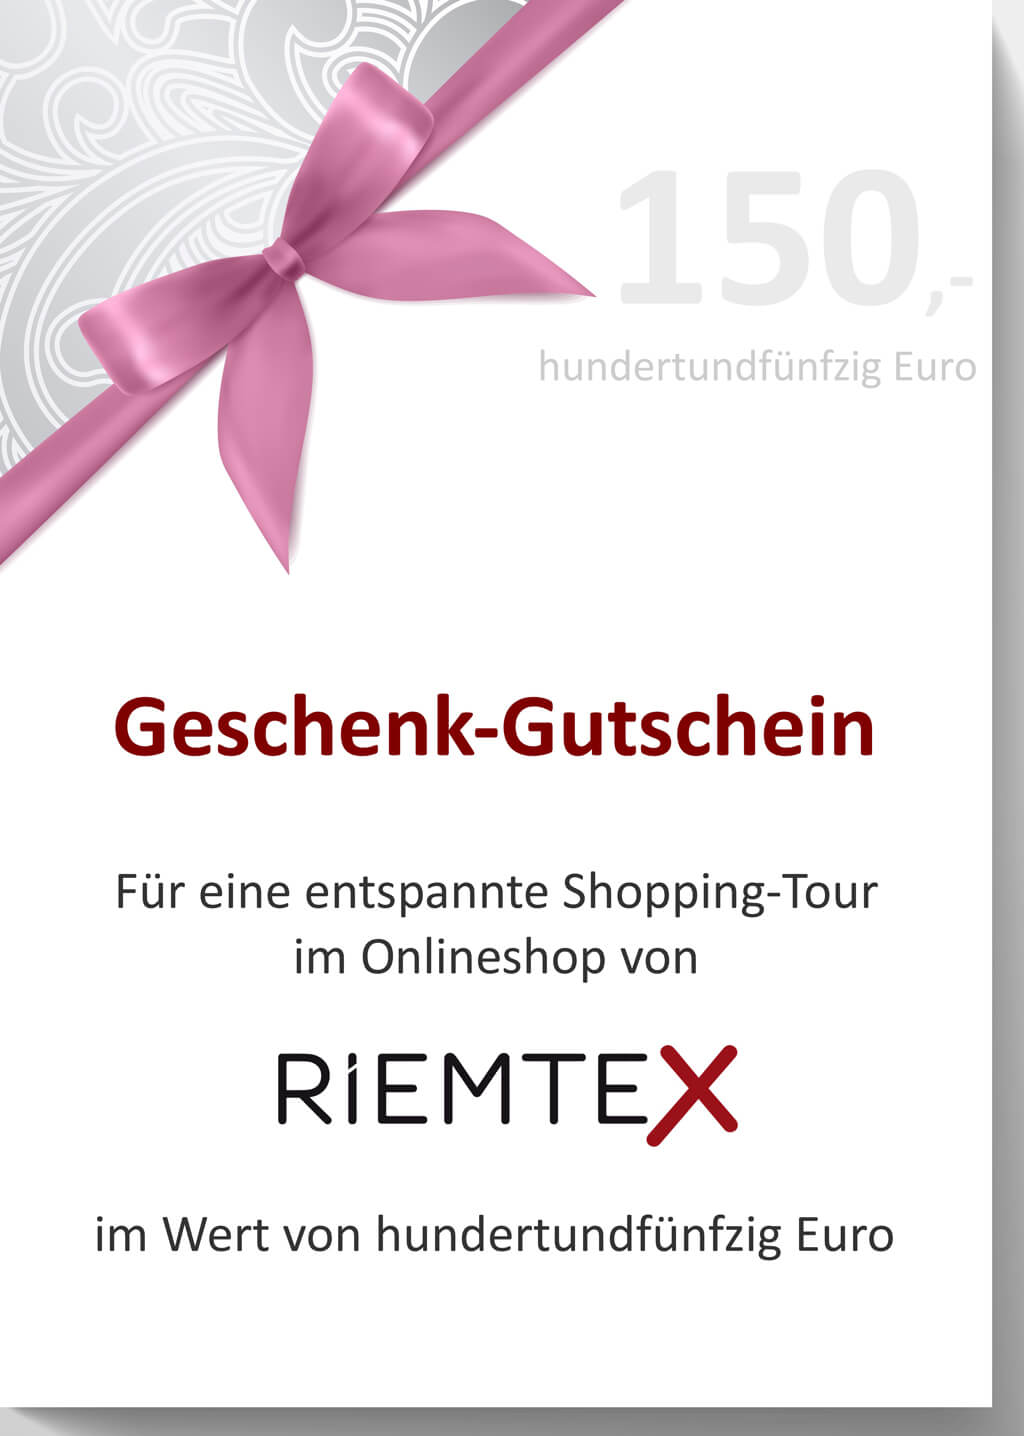 RIEMTEX Geschenkgutscheine im Wert von 150 Euro